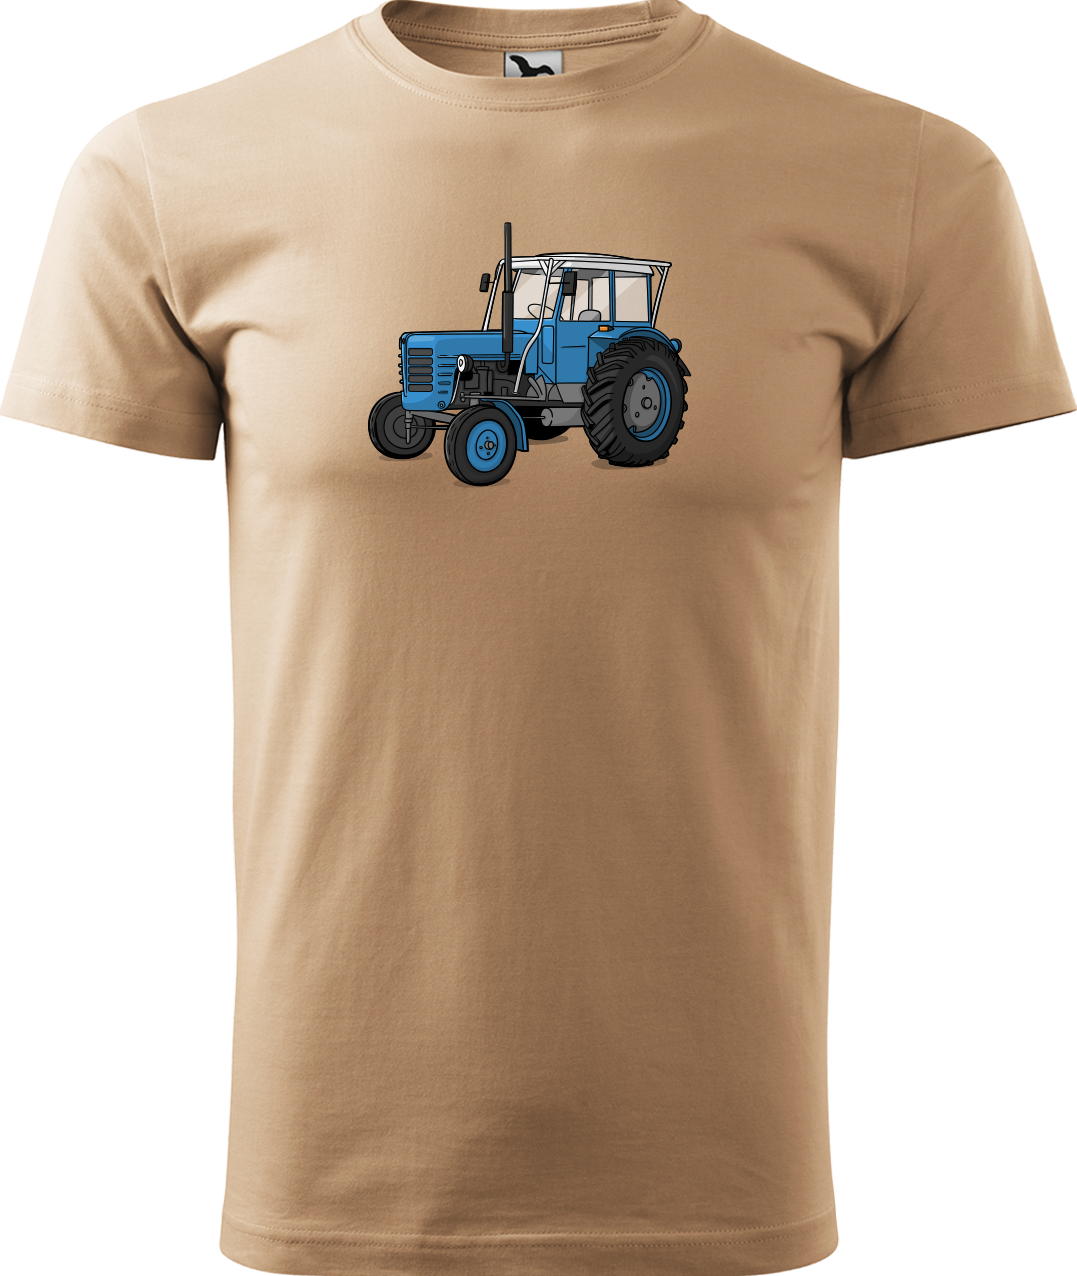 Tričko s traktorem - Starý traktor Velikost: XL, Barva: Písková (08)